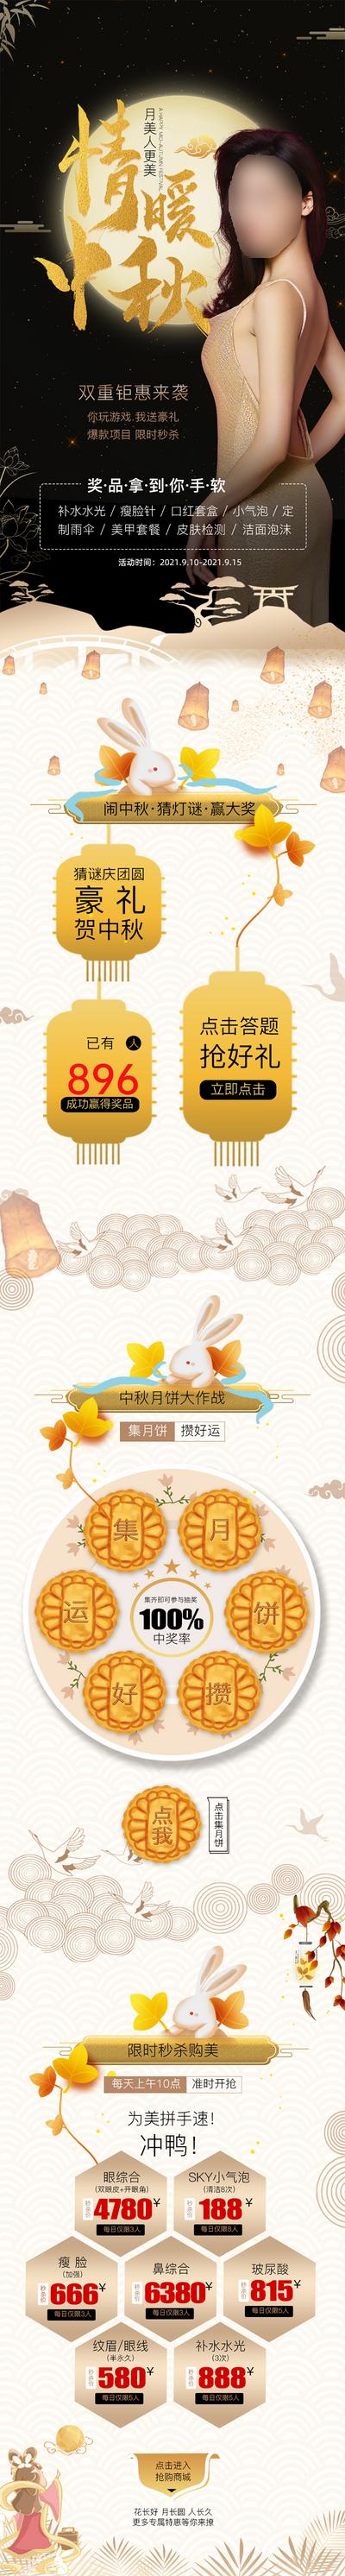 南门网 专题设计 医美 整形 中国传统节日 中秋节 豪礼 月饼 秒杀